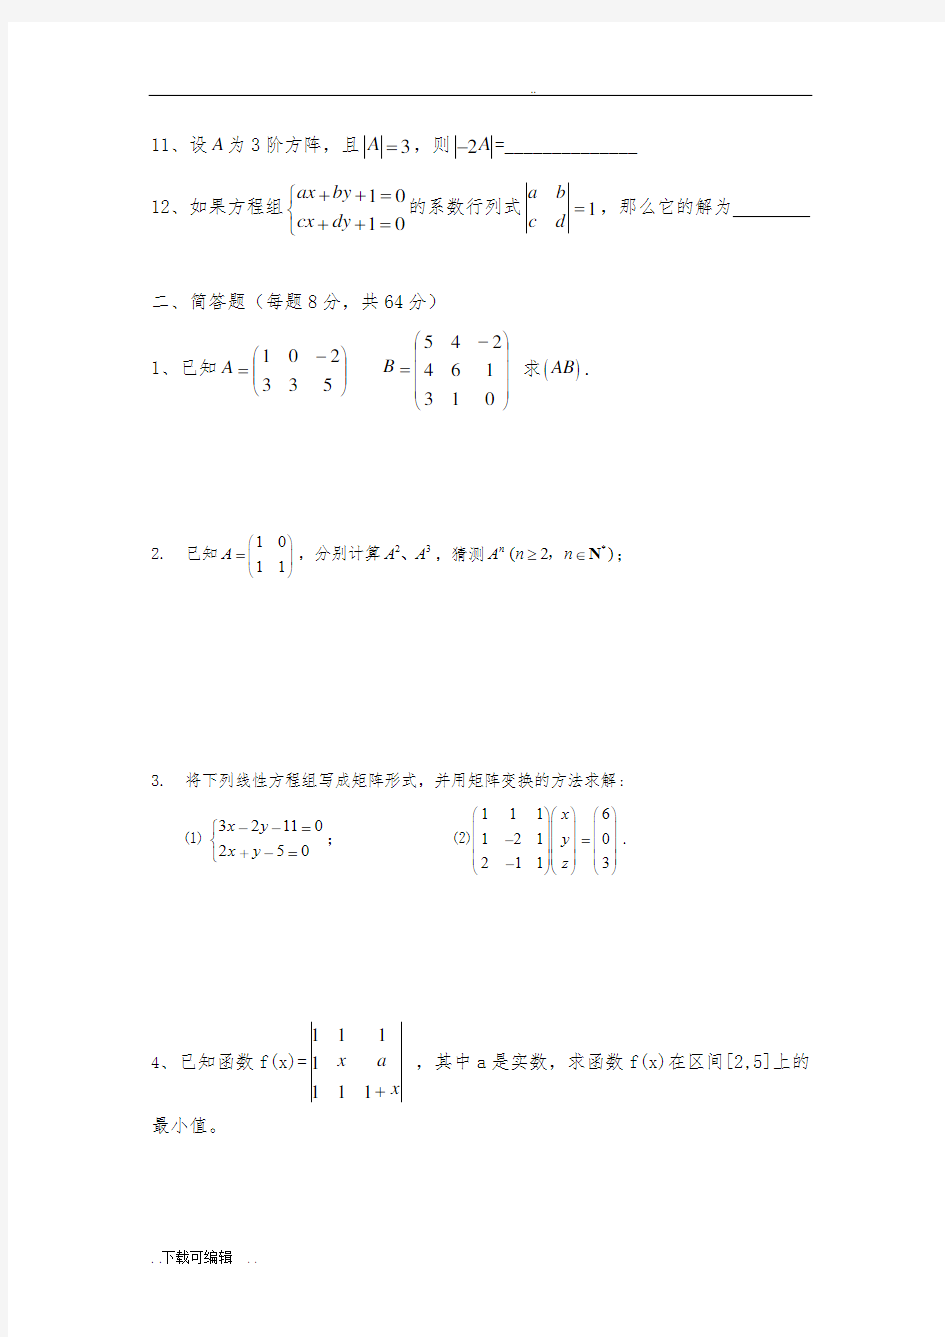 上海版矩阵与行列式基础练习题